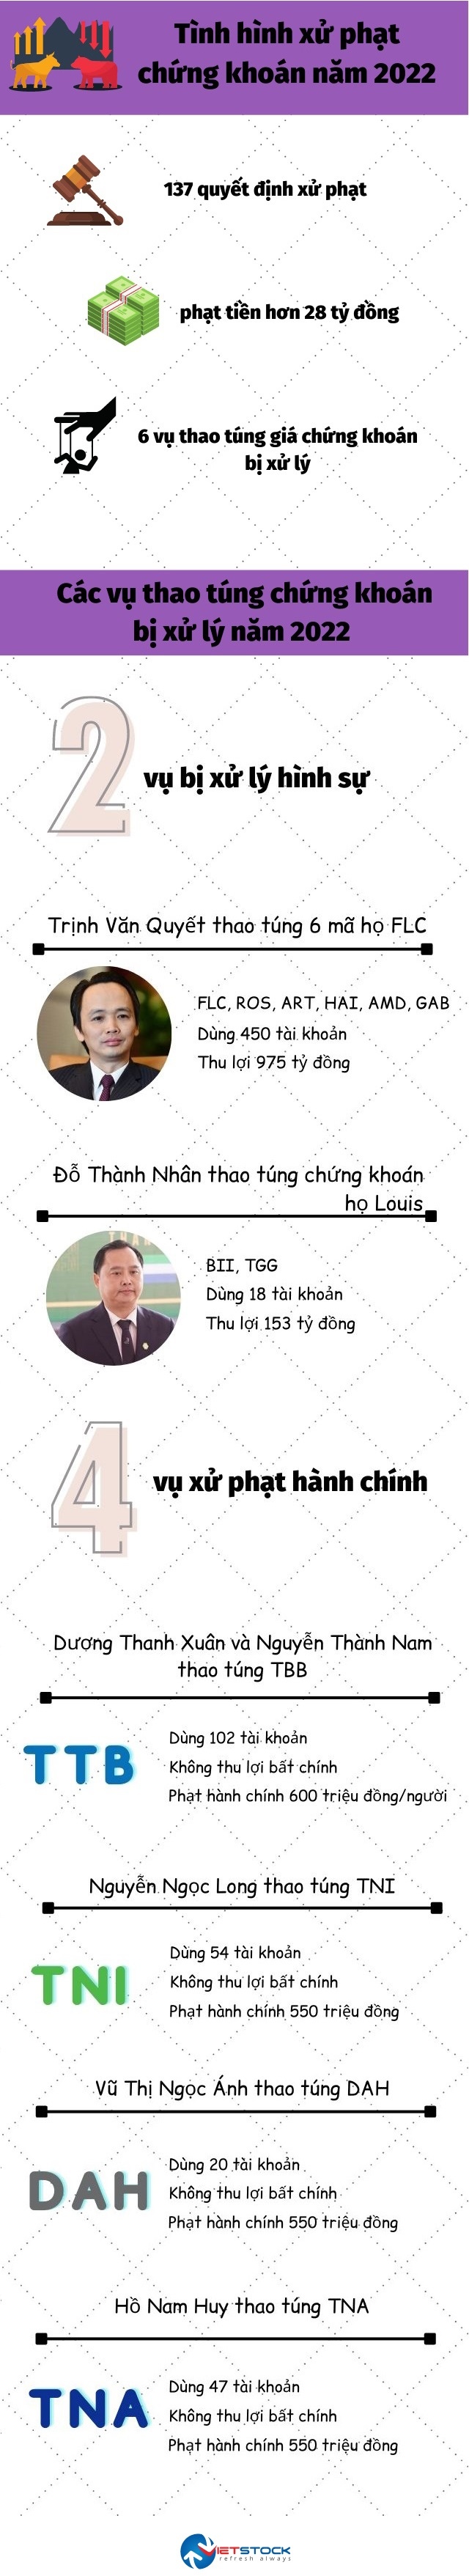 Những án phạt nặng tay của chứng khoán Việt năm 2022